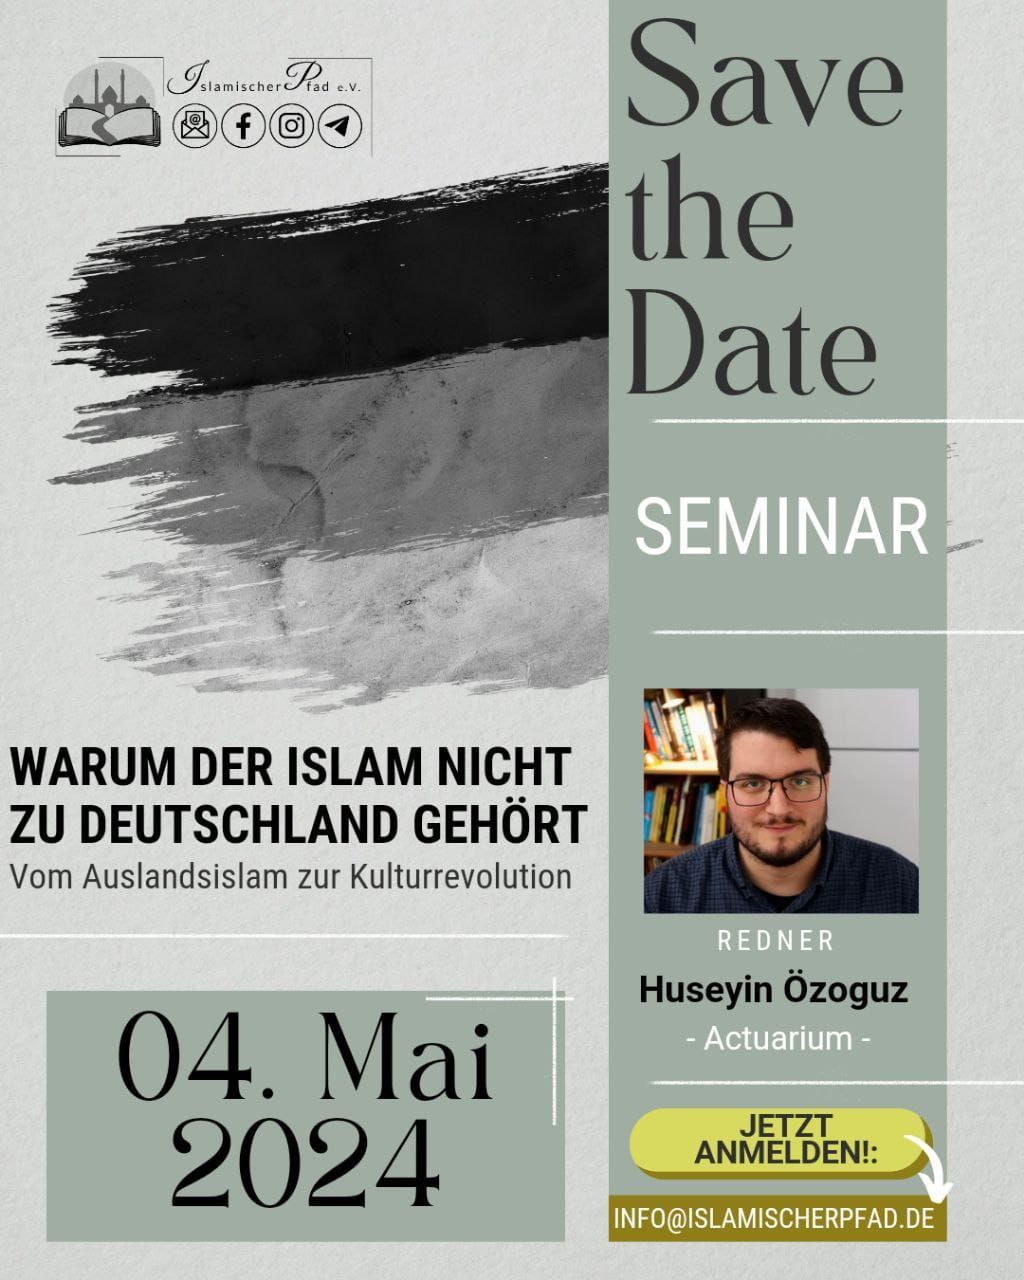 Seminar, "Warum der Islam nicht zu Deutschland gehört – Vom Auslandsislam zur Kulturrevolution"